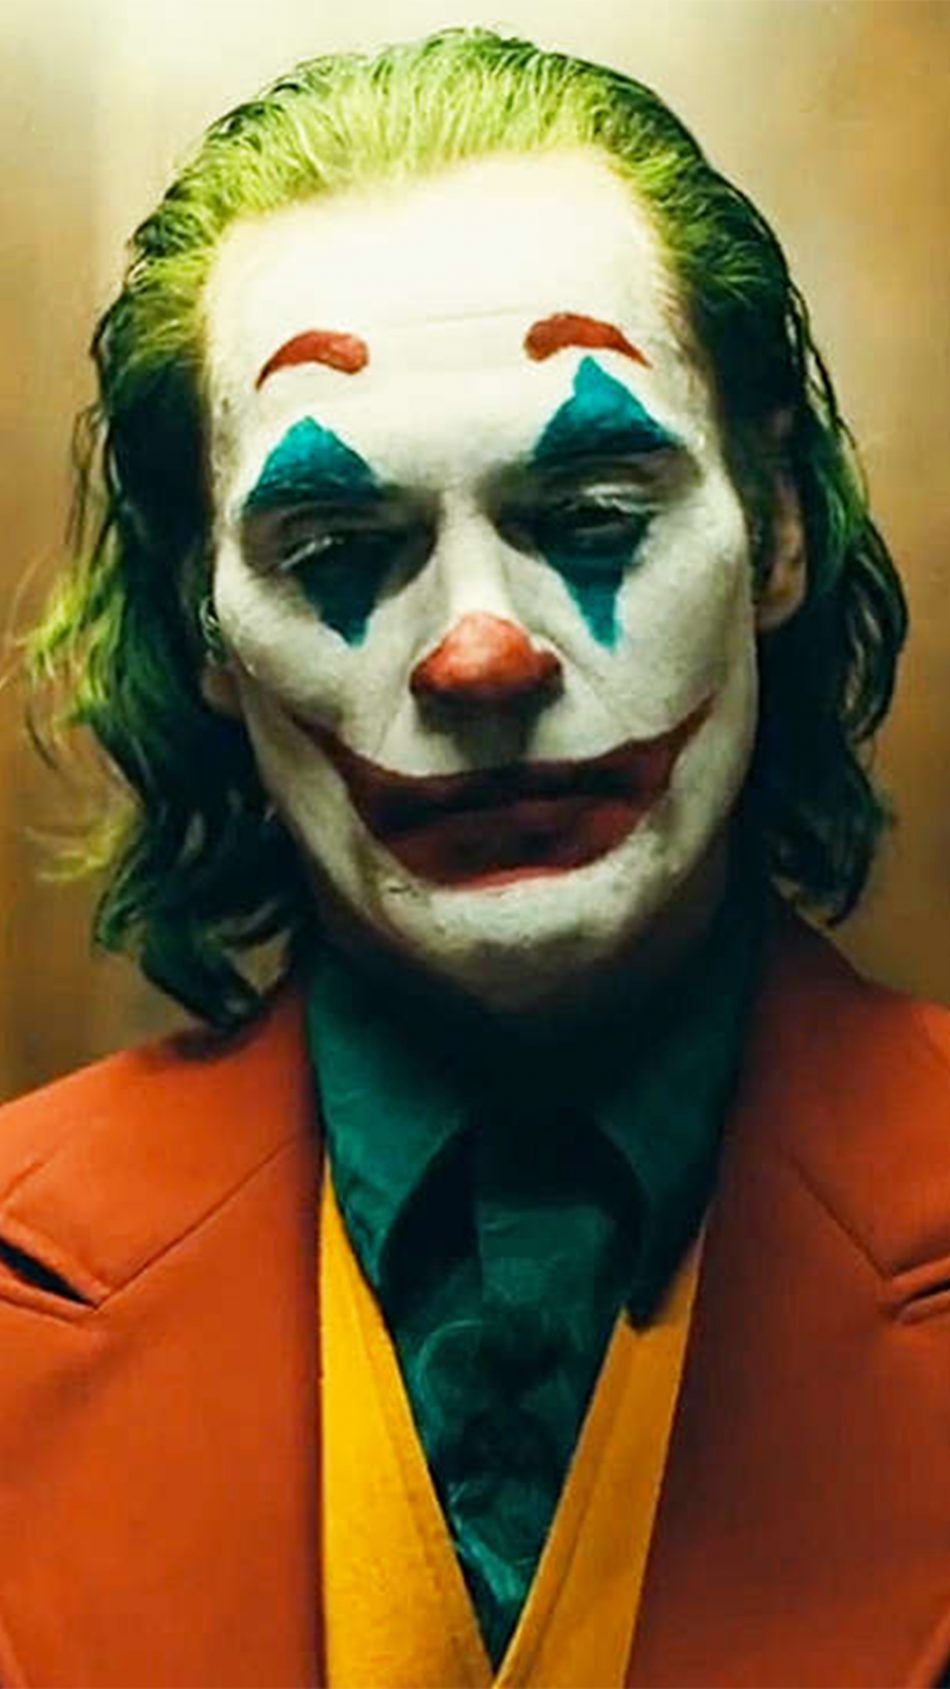 Free download Download Joaquin Phoenix In Joker 2019 Free Pure 4K ...